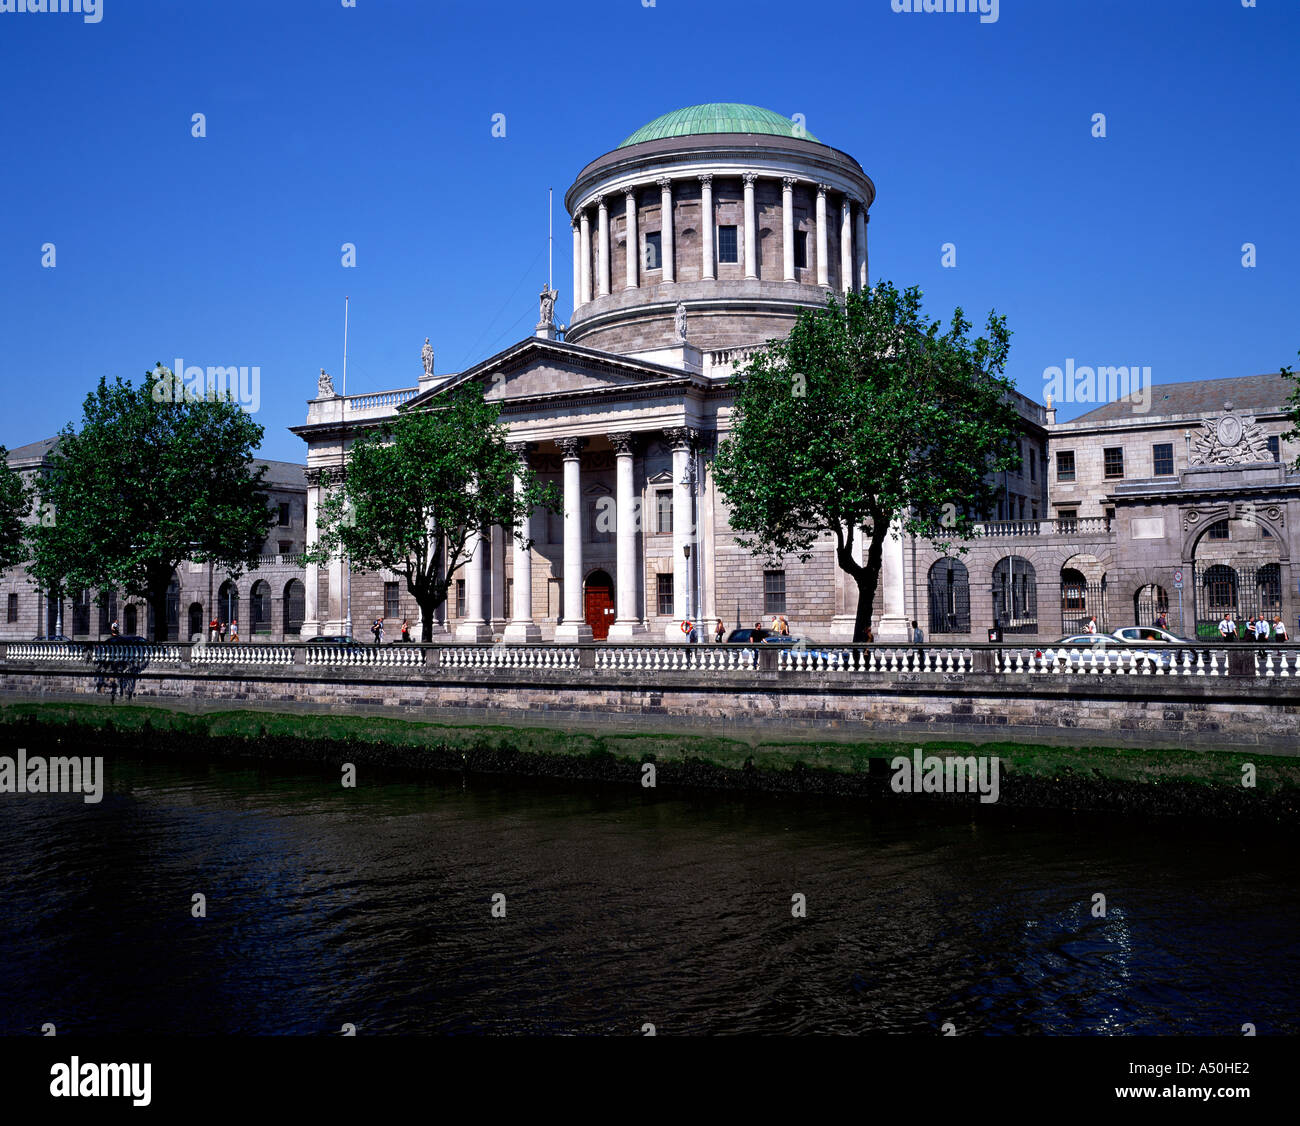 Les quatre Cours de justice de Dublin Irlande Banque D'Images